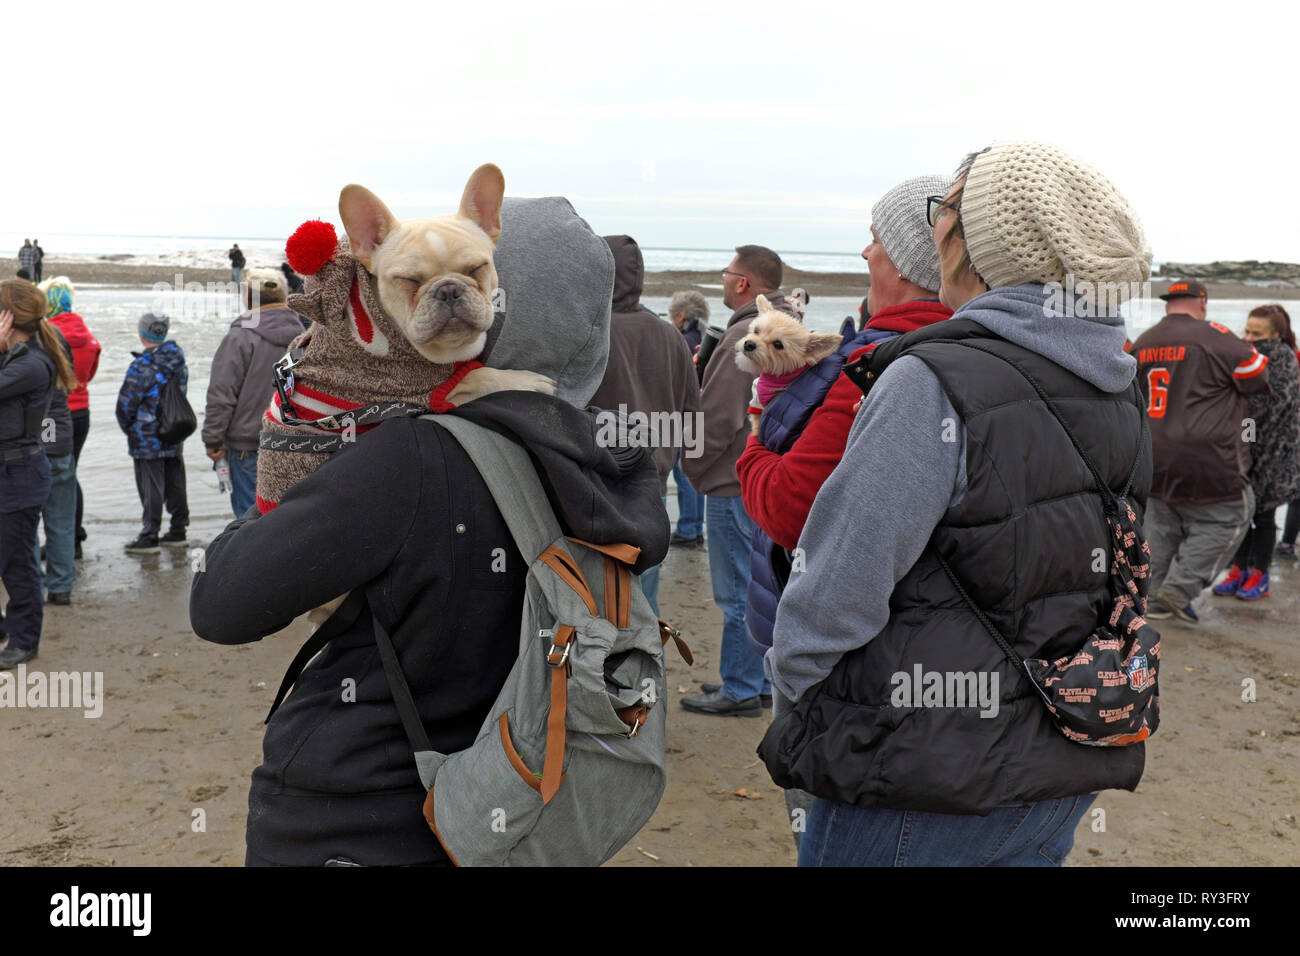 Le chien ferme les yeux alors que les gens participent au Polar Plunge 2019 qui s'est tenu sur les rives du lac Érié Edgewater Beach à Cleveland, Ohio, le 23 février. Banque D'Images